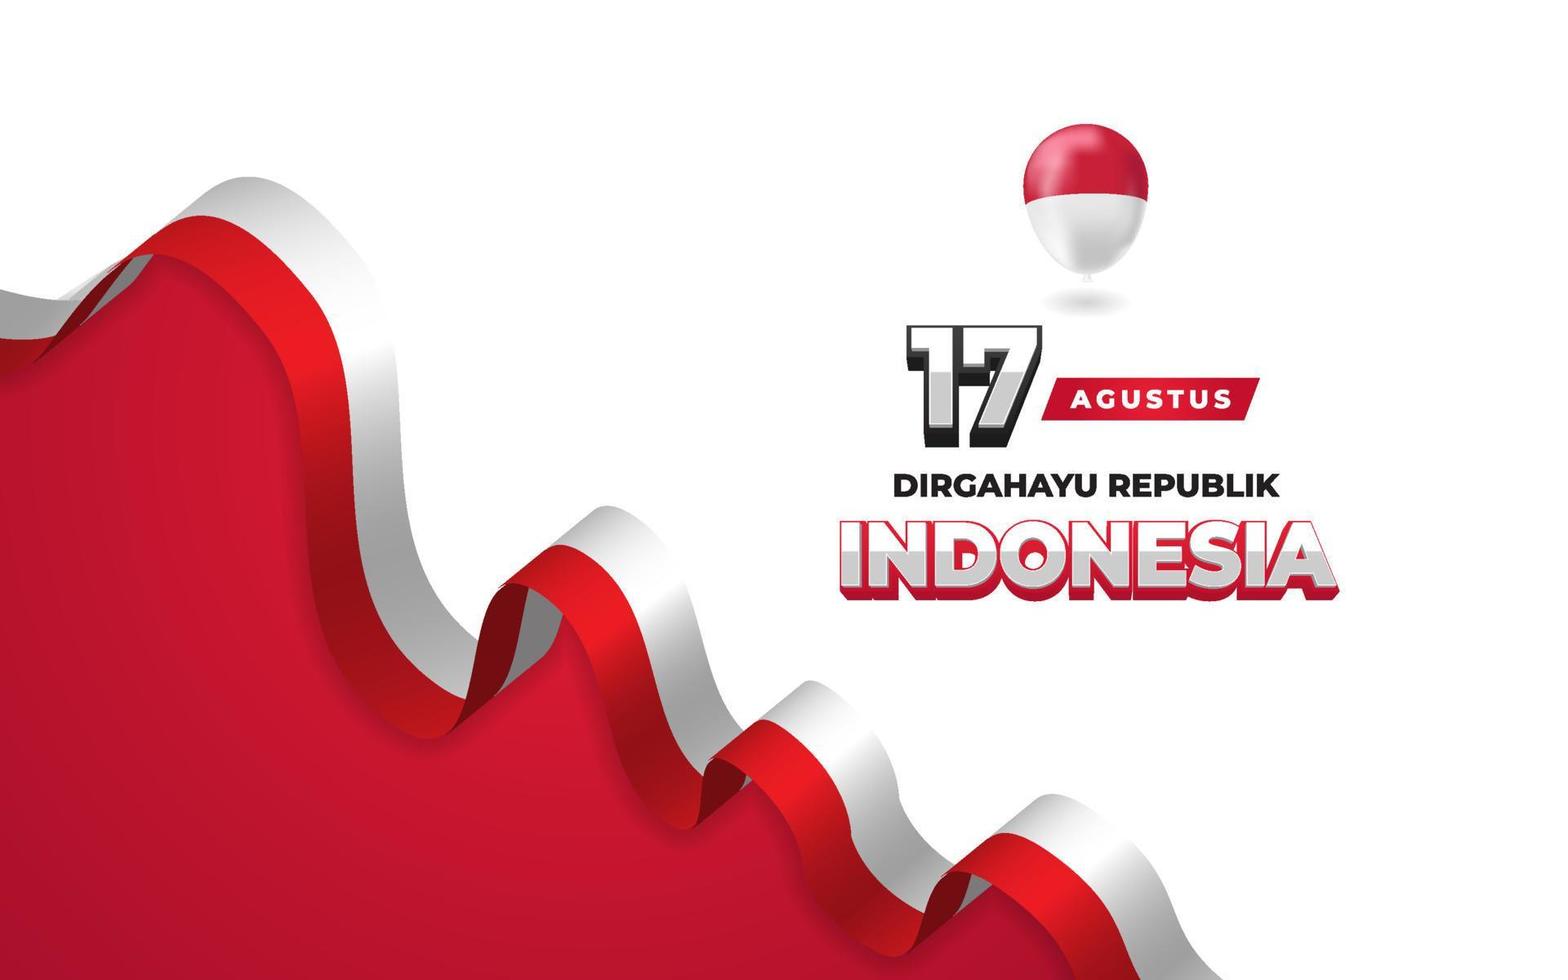 17 agosto bandiera della cartolina d'auguri del giorno dell'indipendenza dell'indonesia vettore